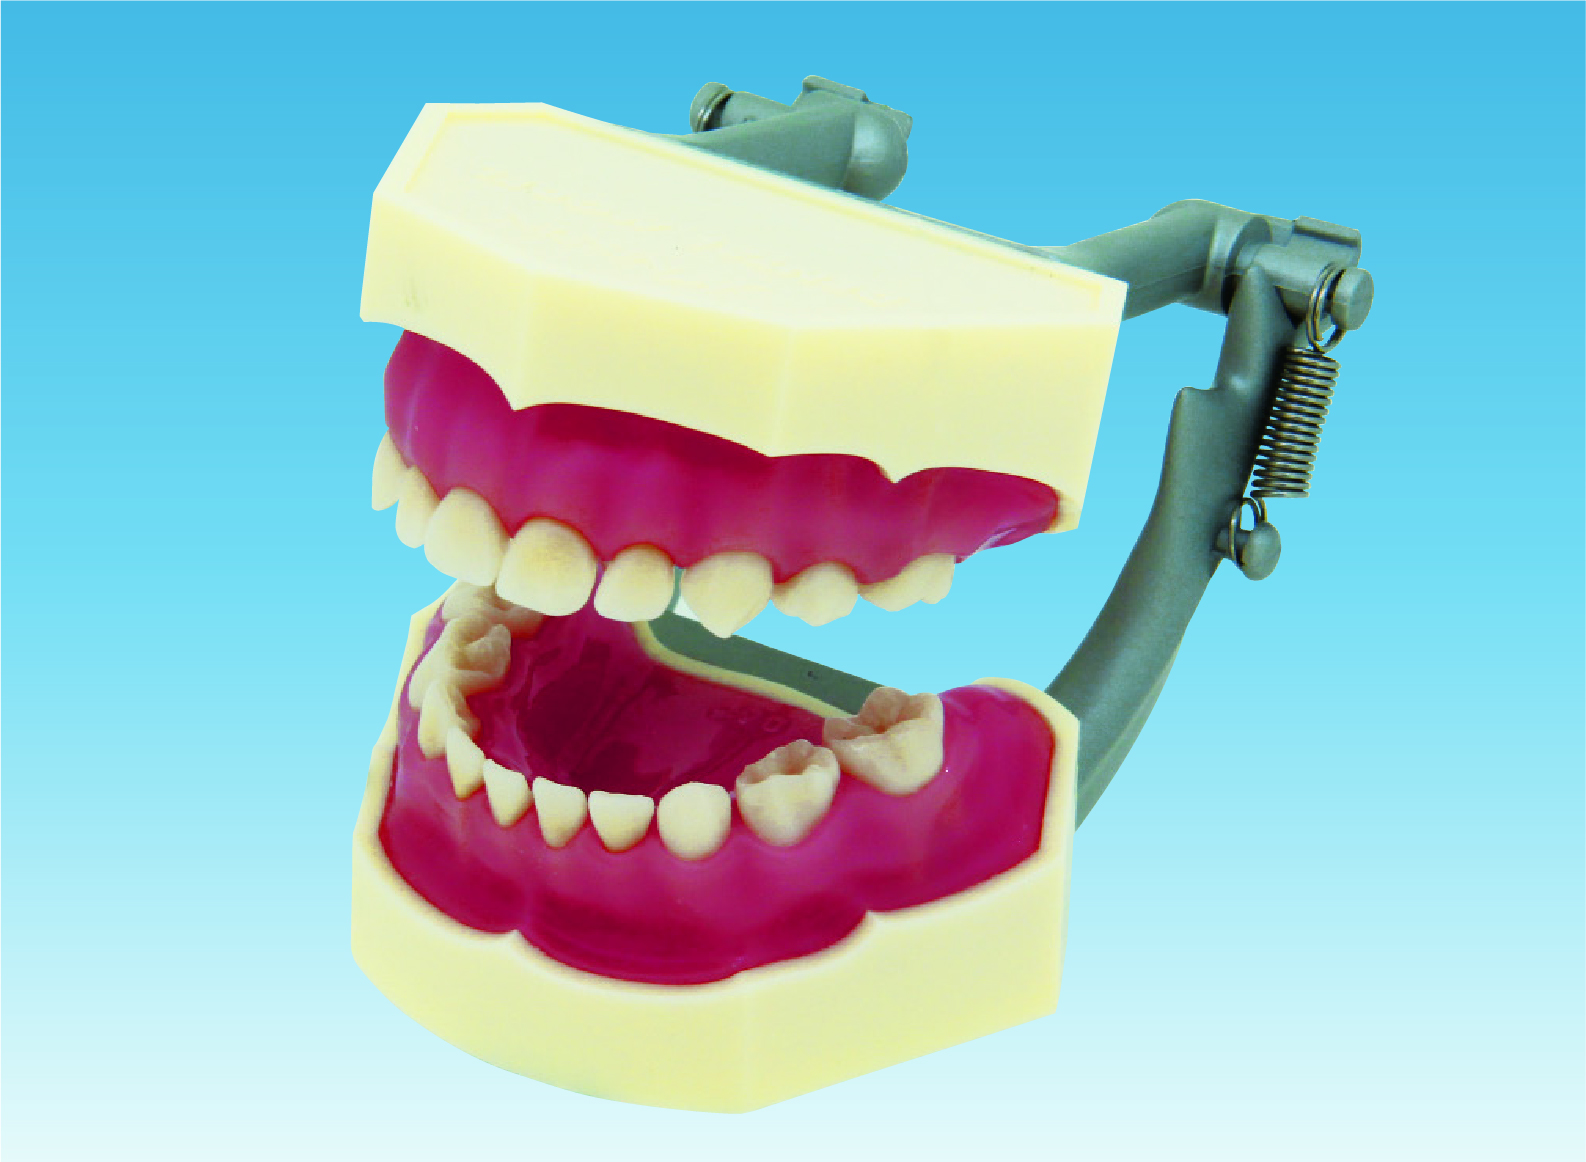 複製模型歯着脱顎模型(乳歯列) [PE-ANA004(I3D-400D)]